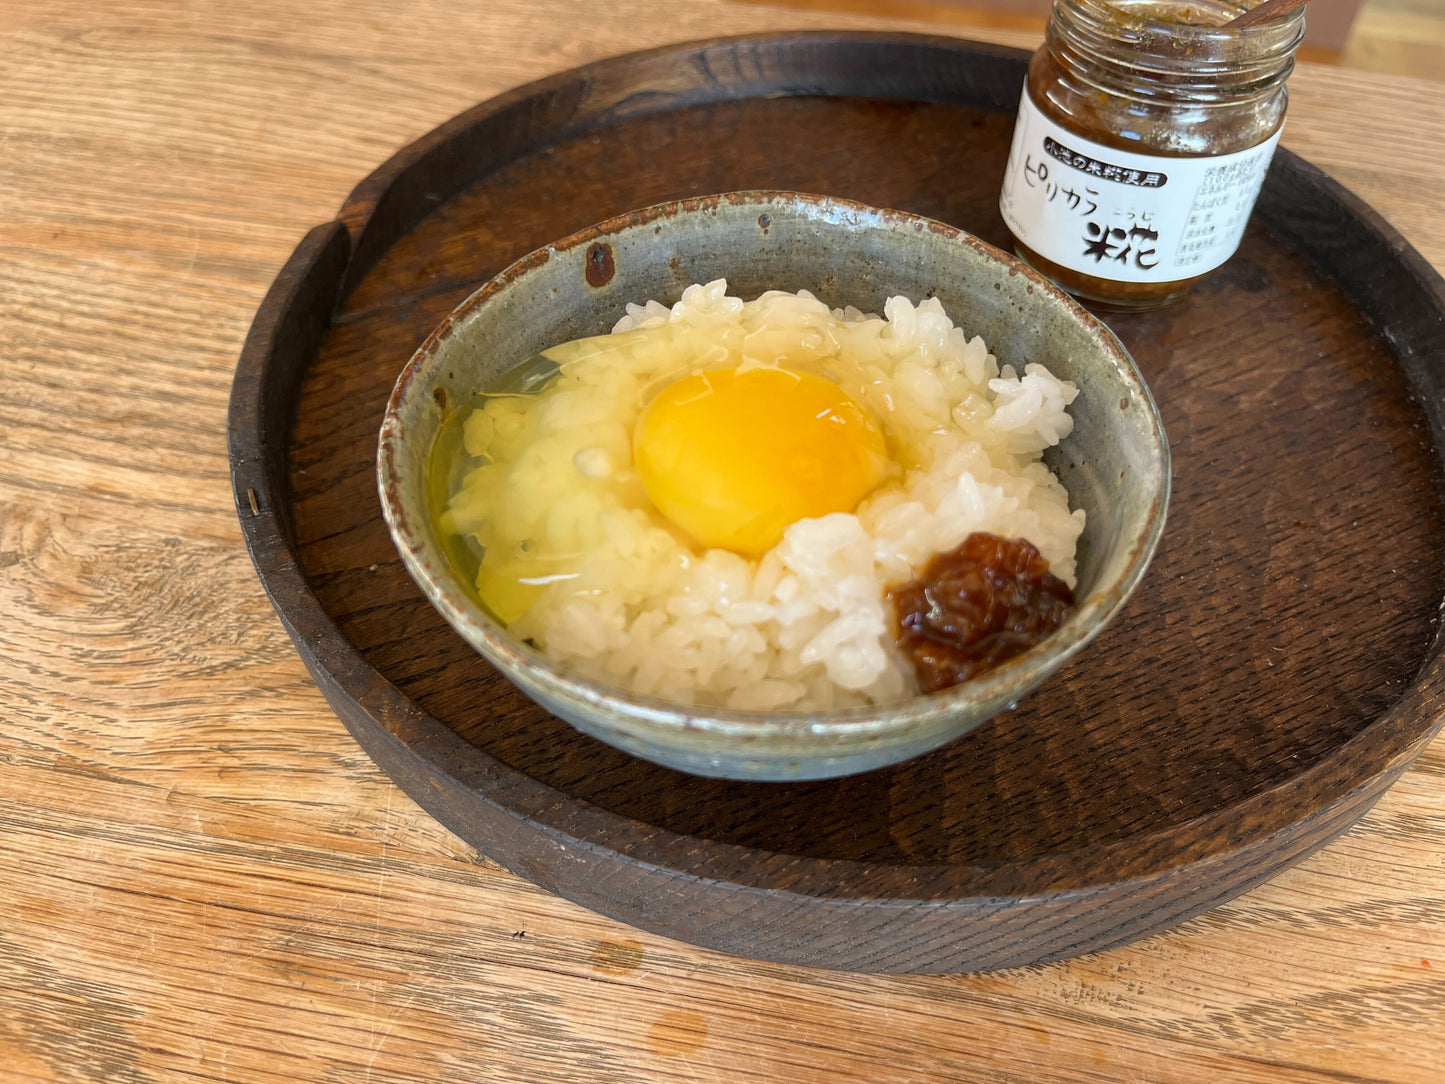 【かんたんおいしいレシピVol.8】 新米の美味しい食べ方セット